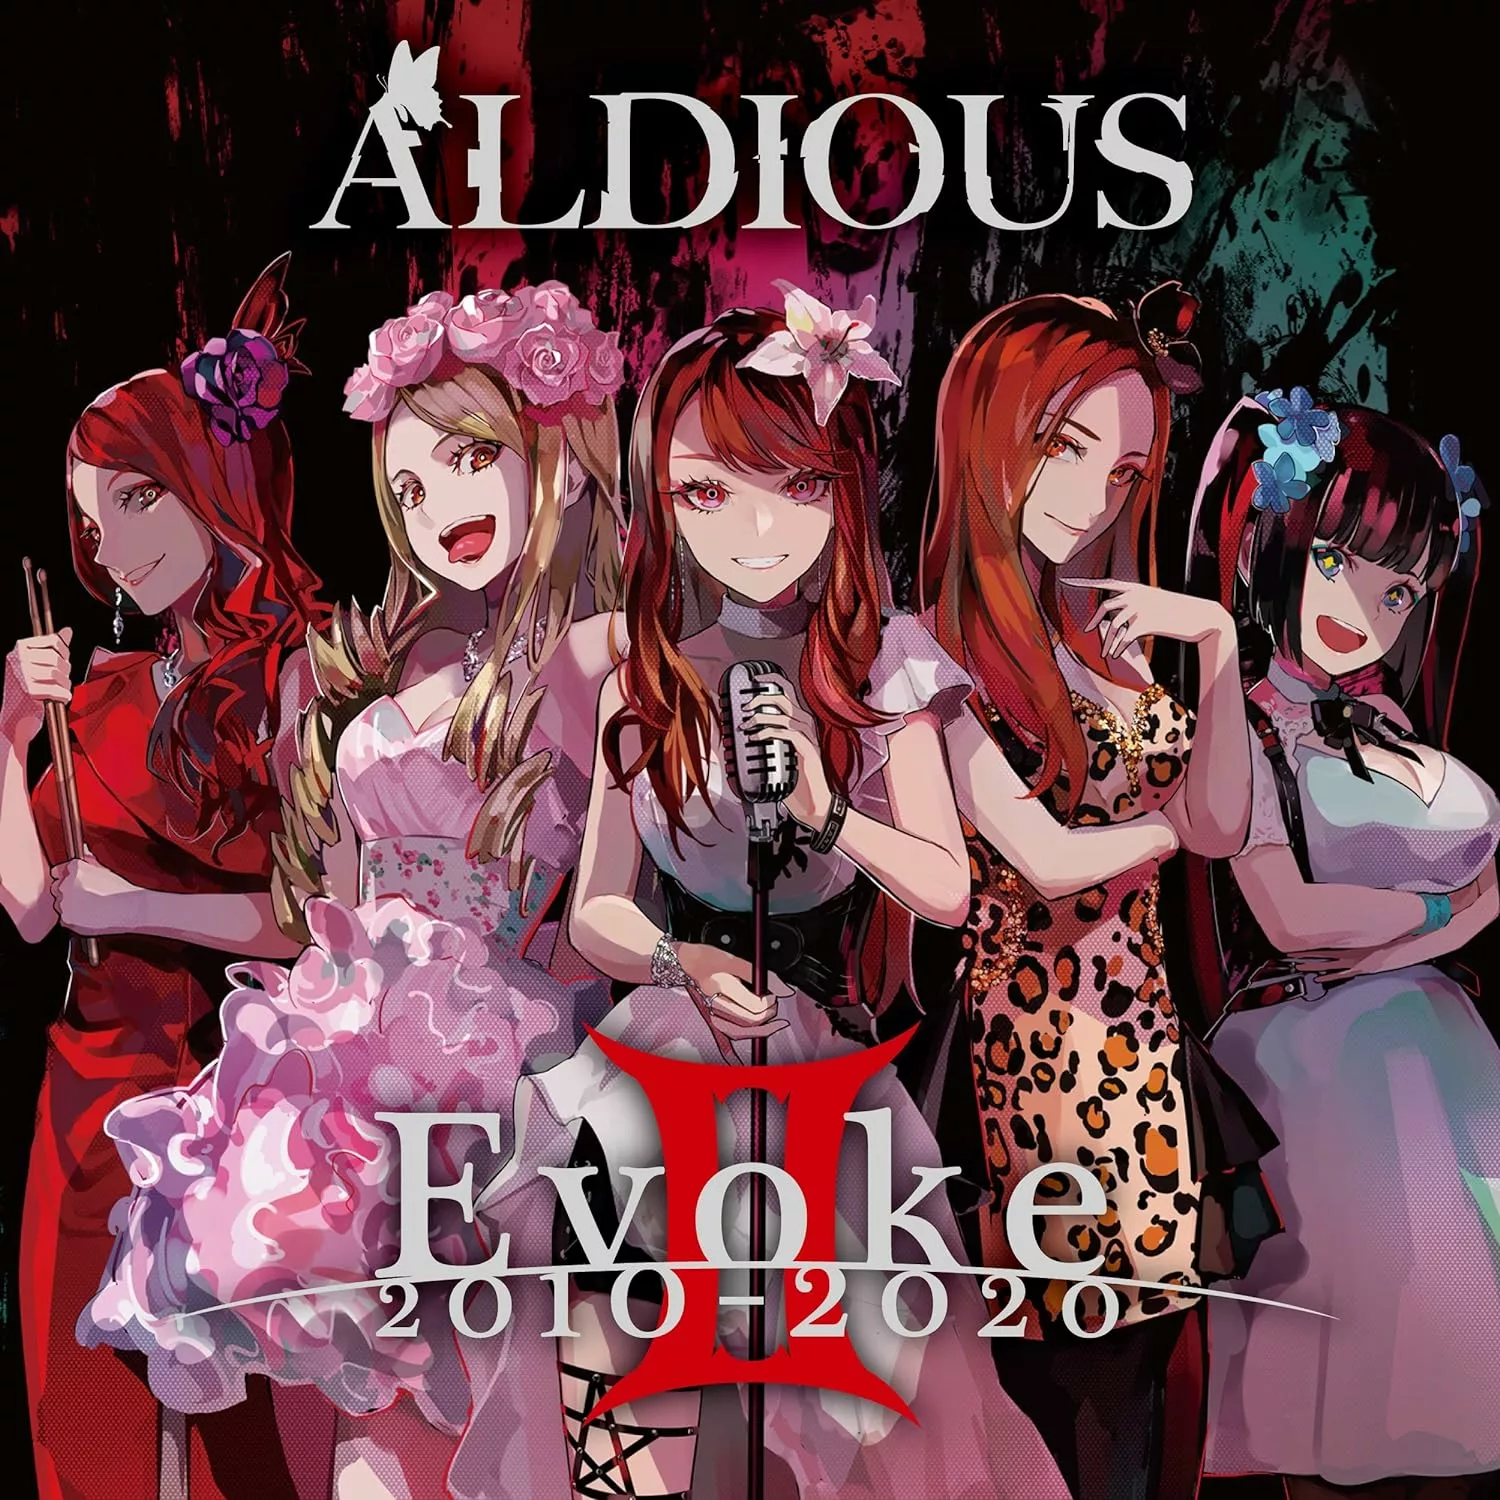 ALDIOUS - Evoke II 2010-2020  [CD] - 第 1/1 張圖片